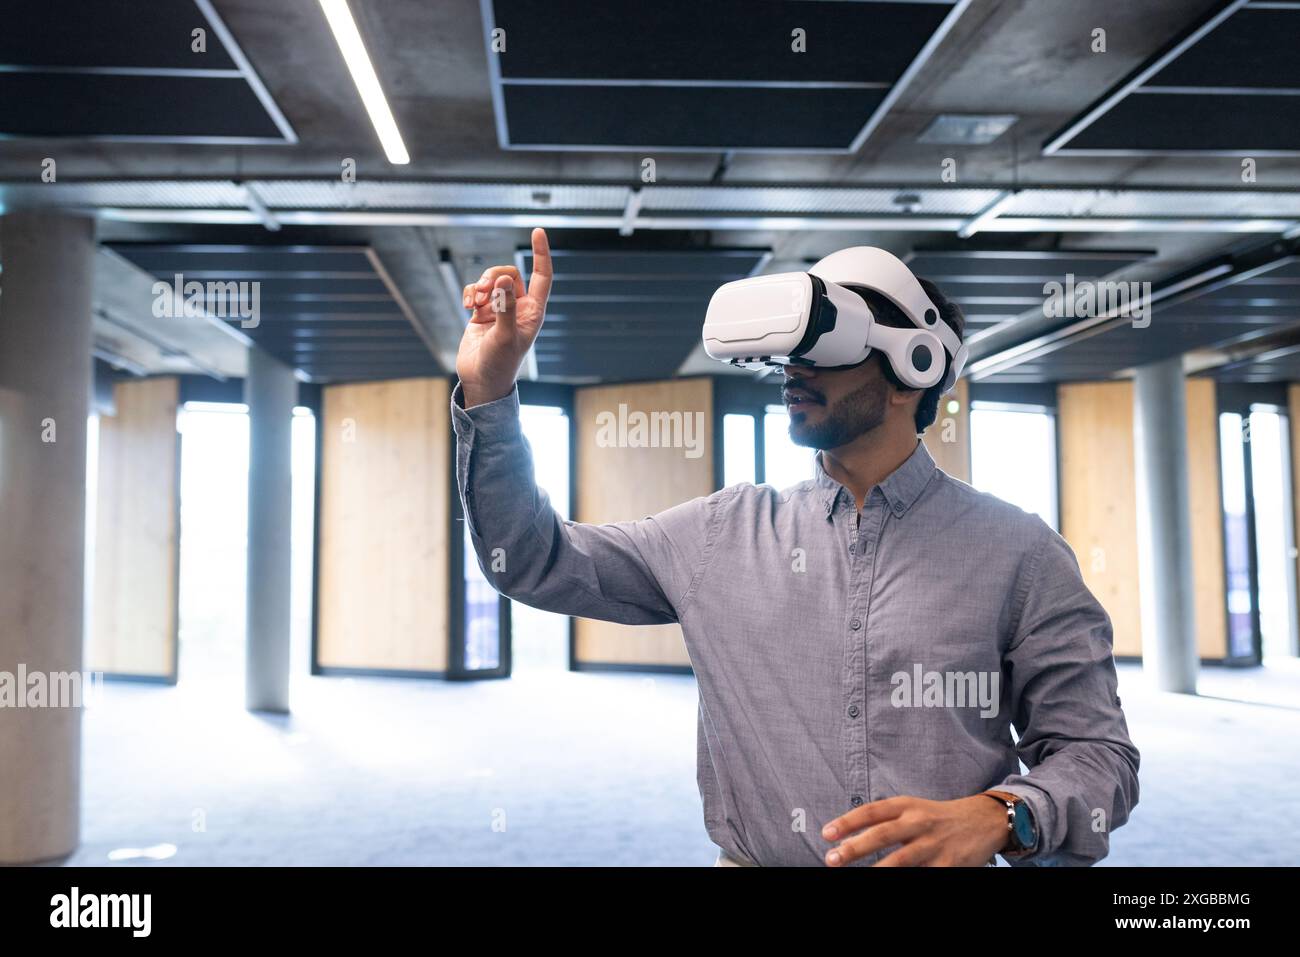 En utilisant le casque VR, l'homme interagissant avec l'interface virtuelle dans le bureau moderne, copiez l'espace Banque D'Images